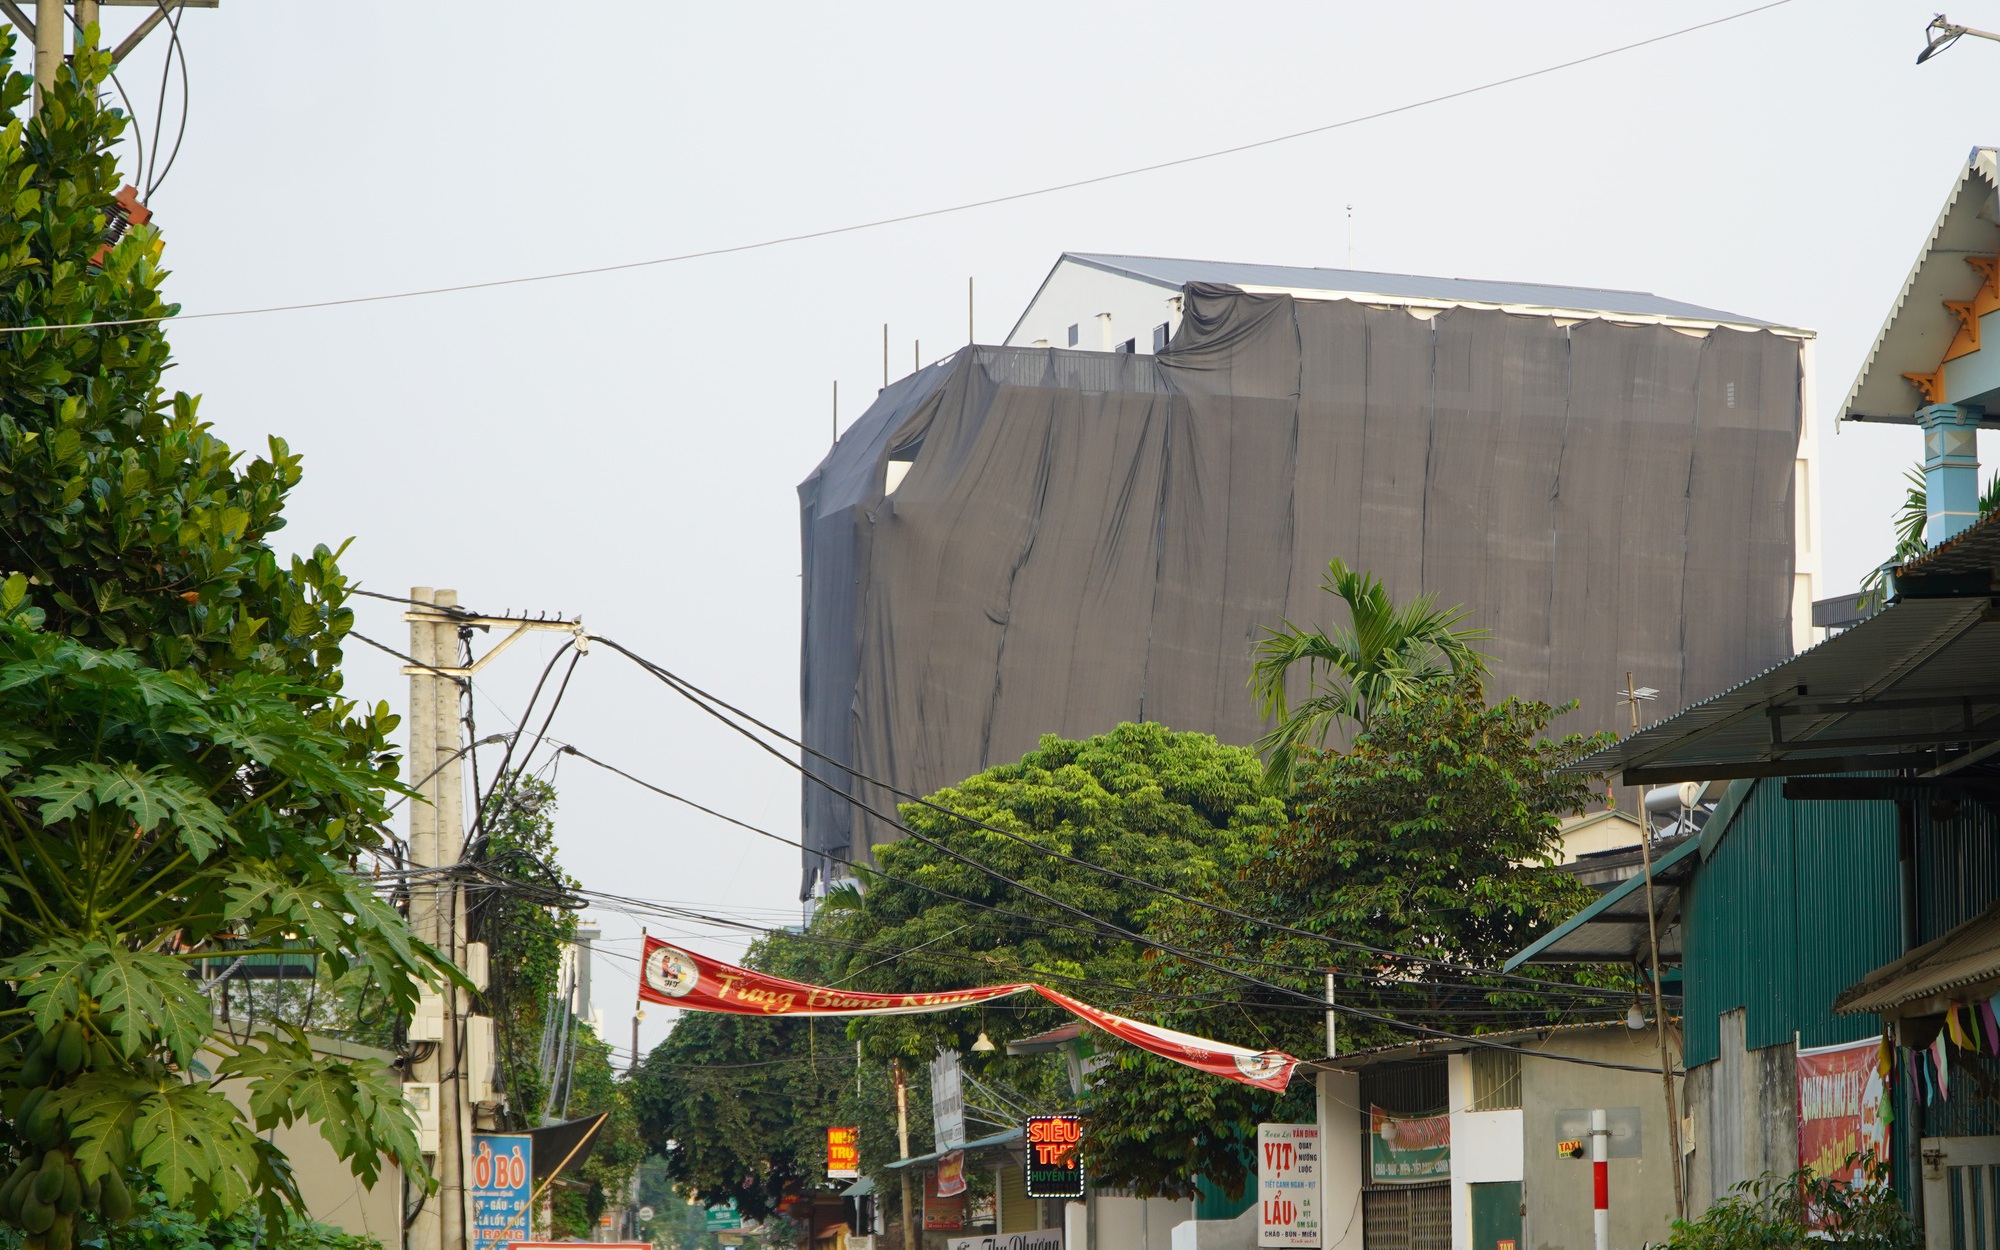 Sau xử lý chung cư mini, huyện Thạch Thất kiến nghị điều chỉnh quy hoạch xây dựng tối đa lên 9 tầng- Ảnh 2.